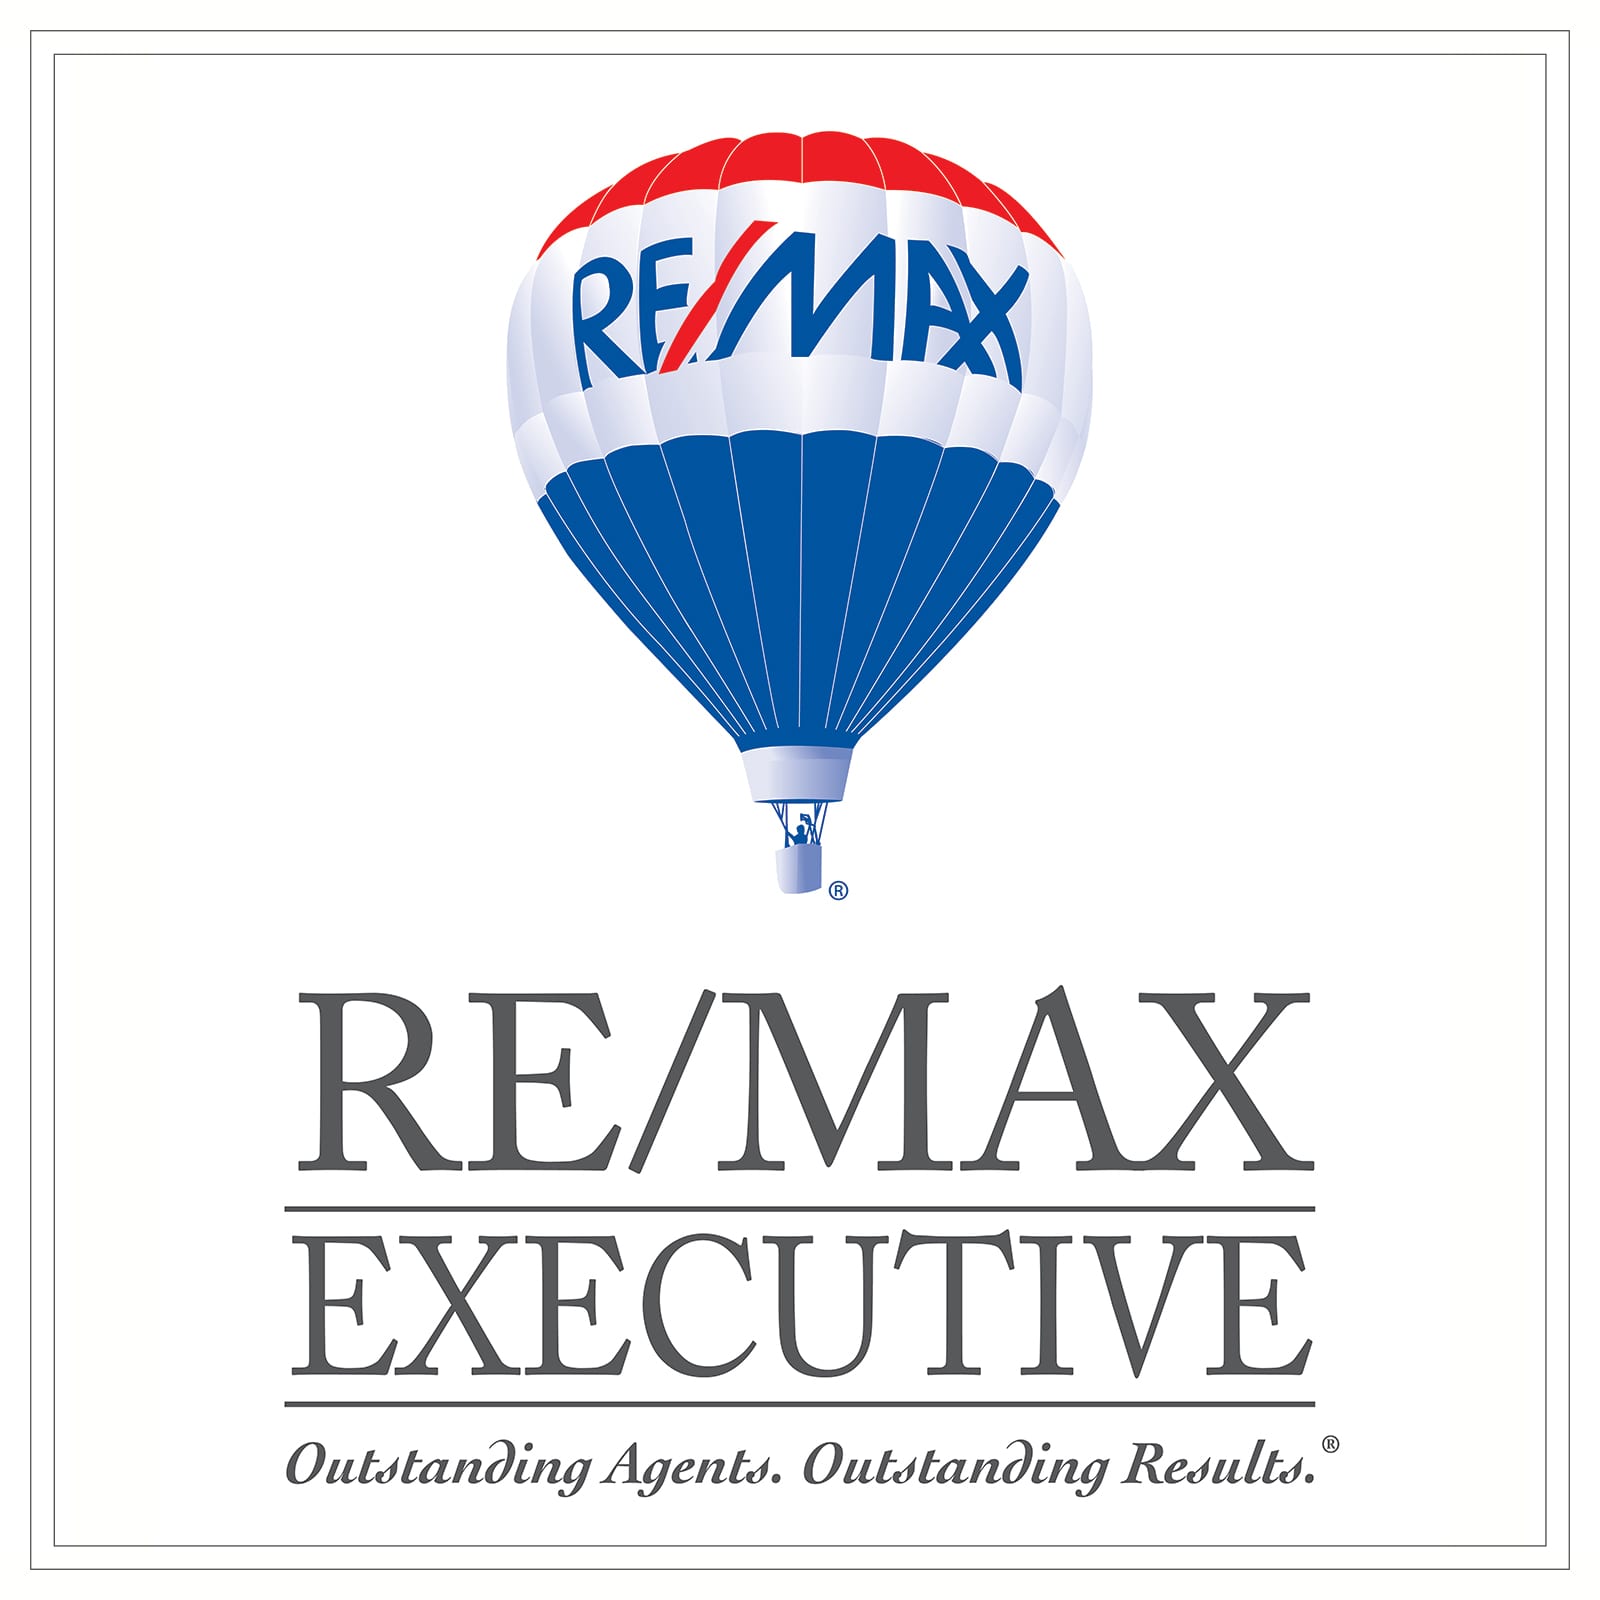 RE/MAX Executive Asheville